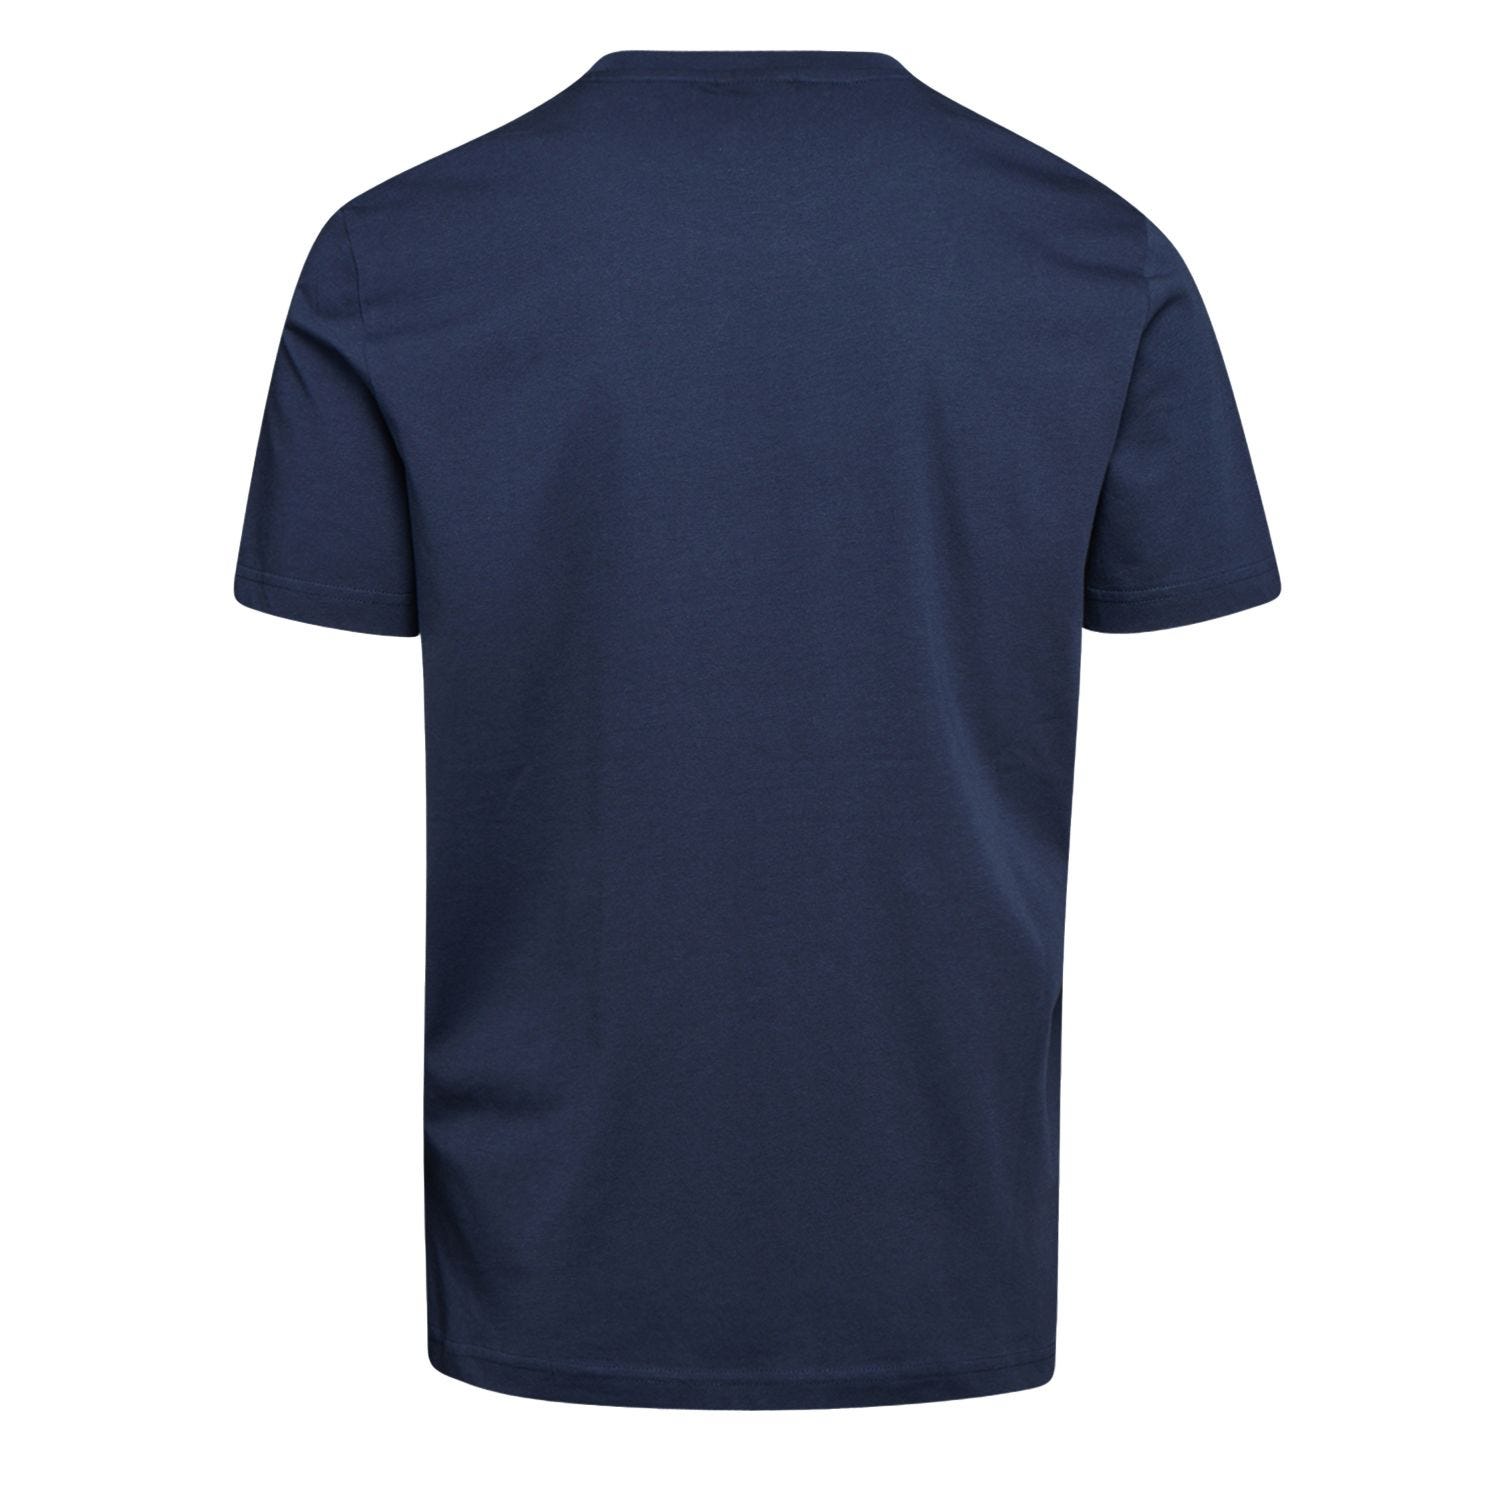 Tee-shirt de travail GRAPHIC ORGANIC à manches courtes bleu marine T2XL - DIADORA SPA - 702.176914 2